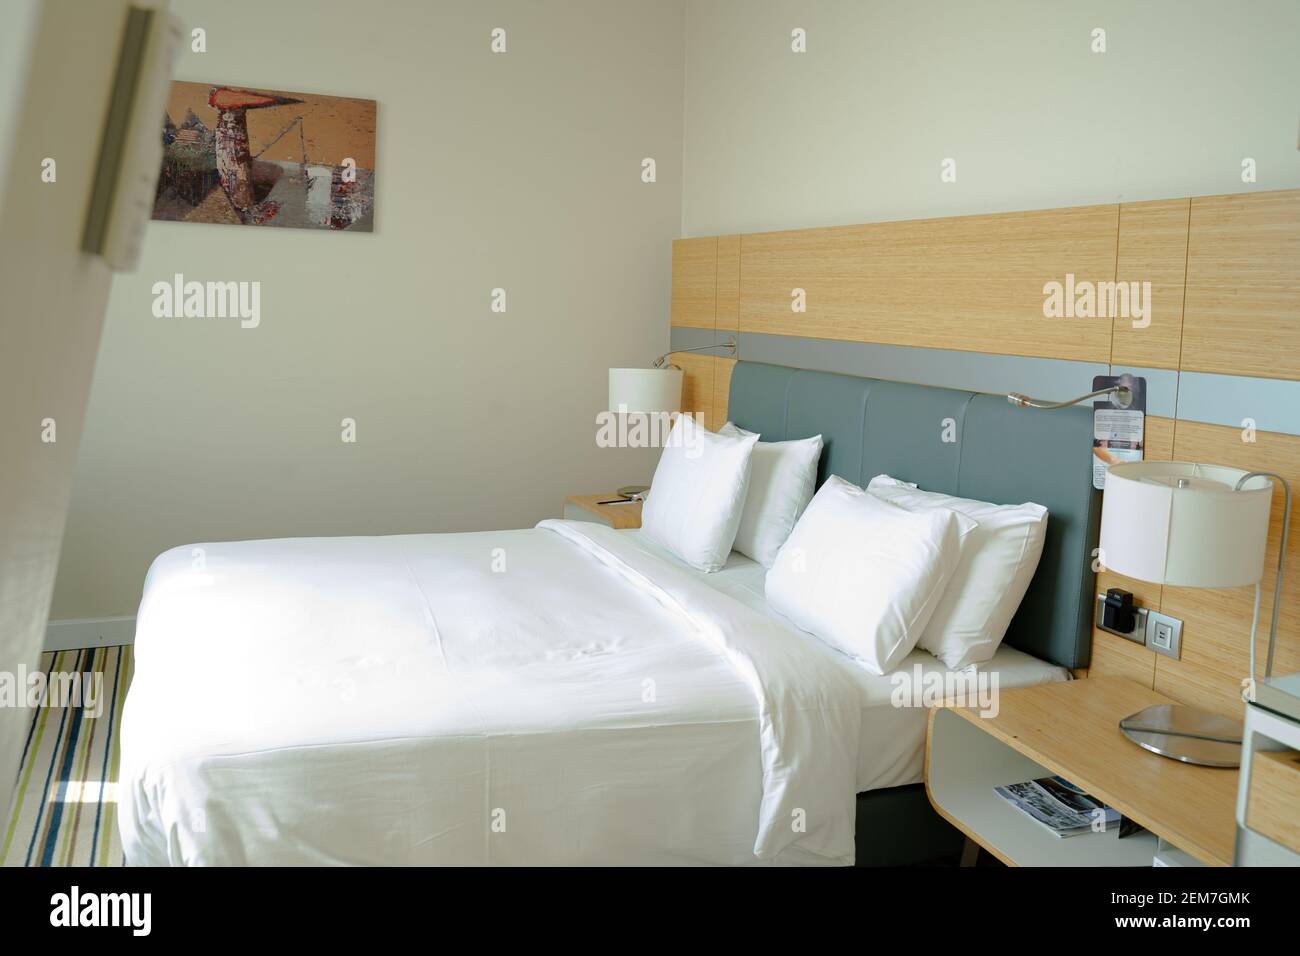 Letto king size in una camera vuota e moderna e accogliente mansarda dell'hotel, luminosa attraverso la finestra Foto Stock